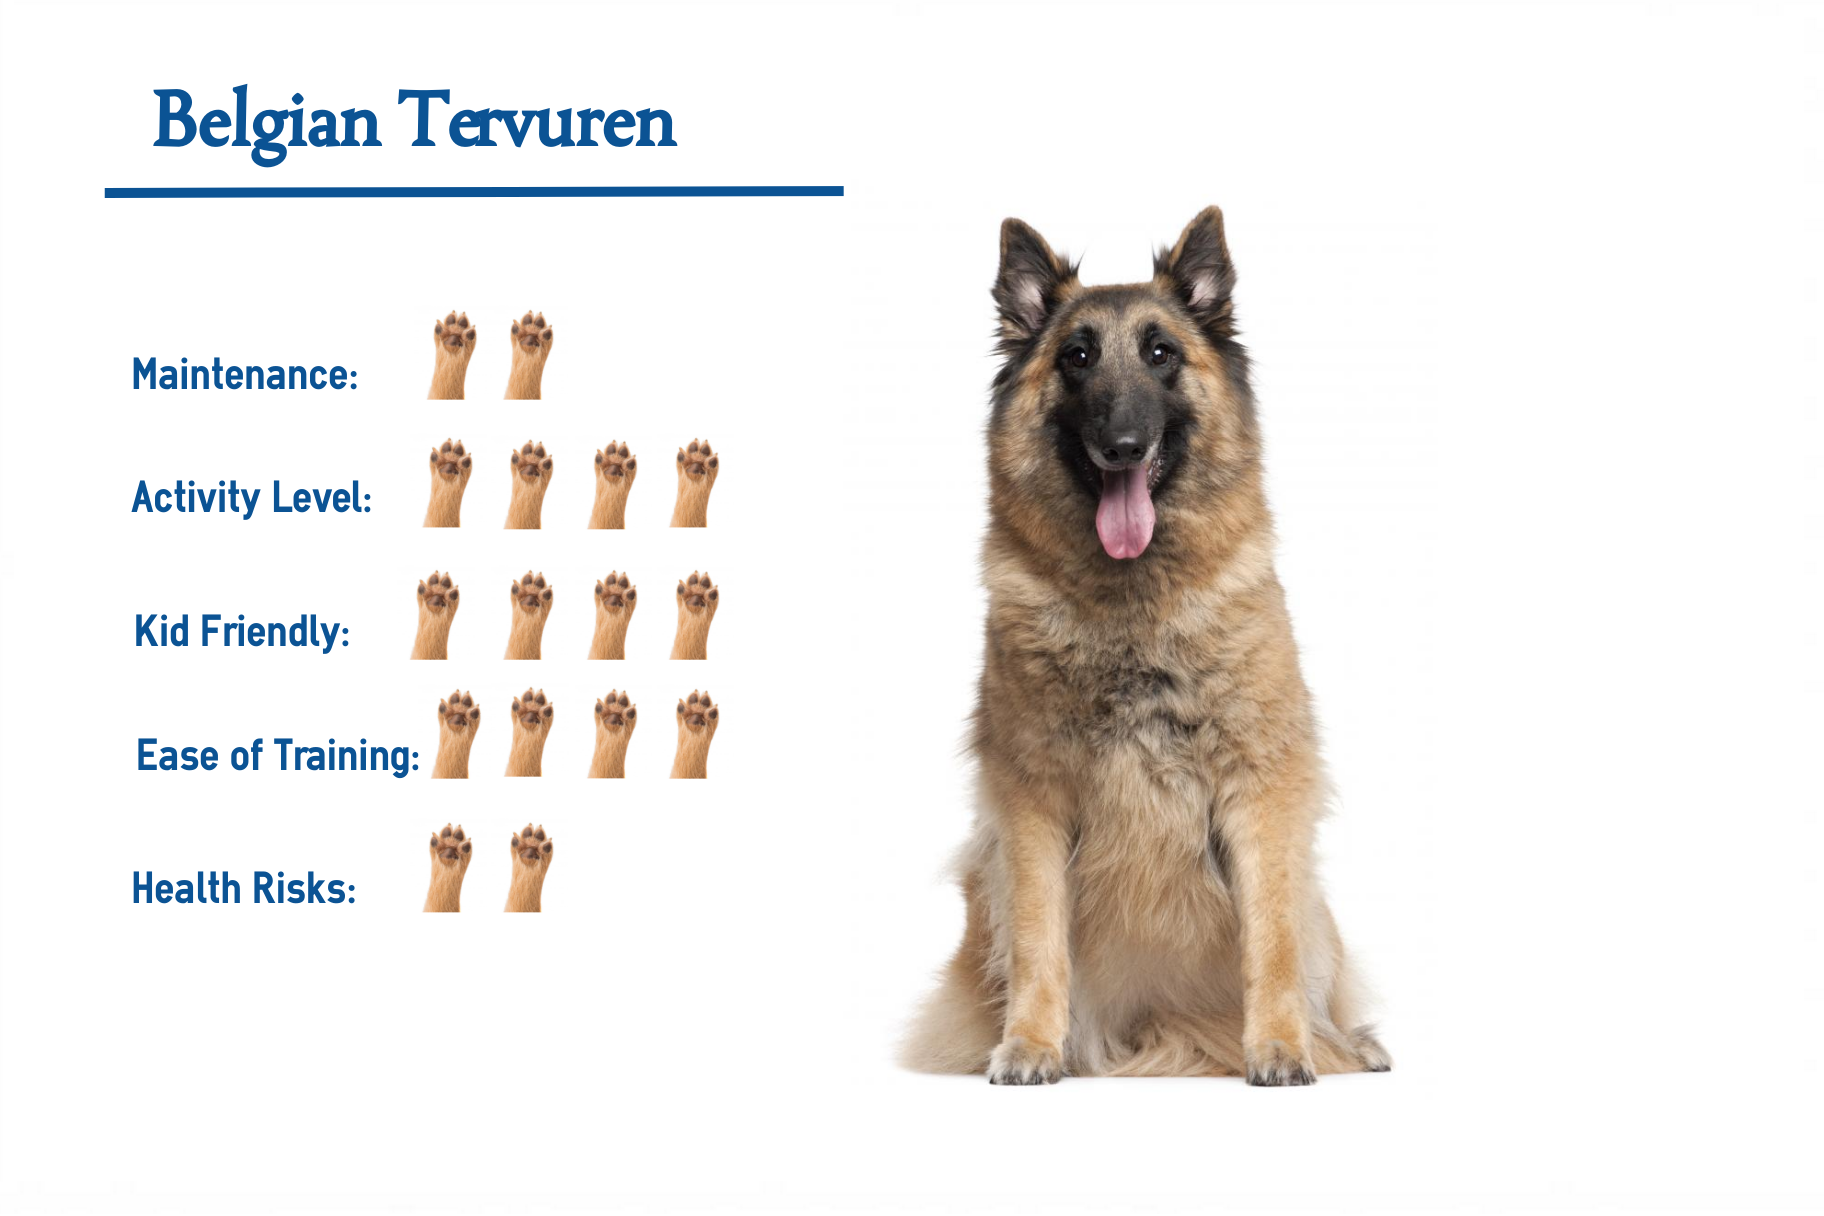 Belgian Tervuren Dog Breed Information